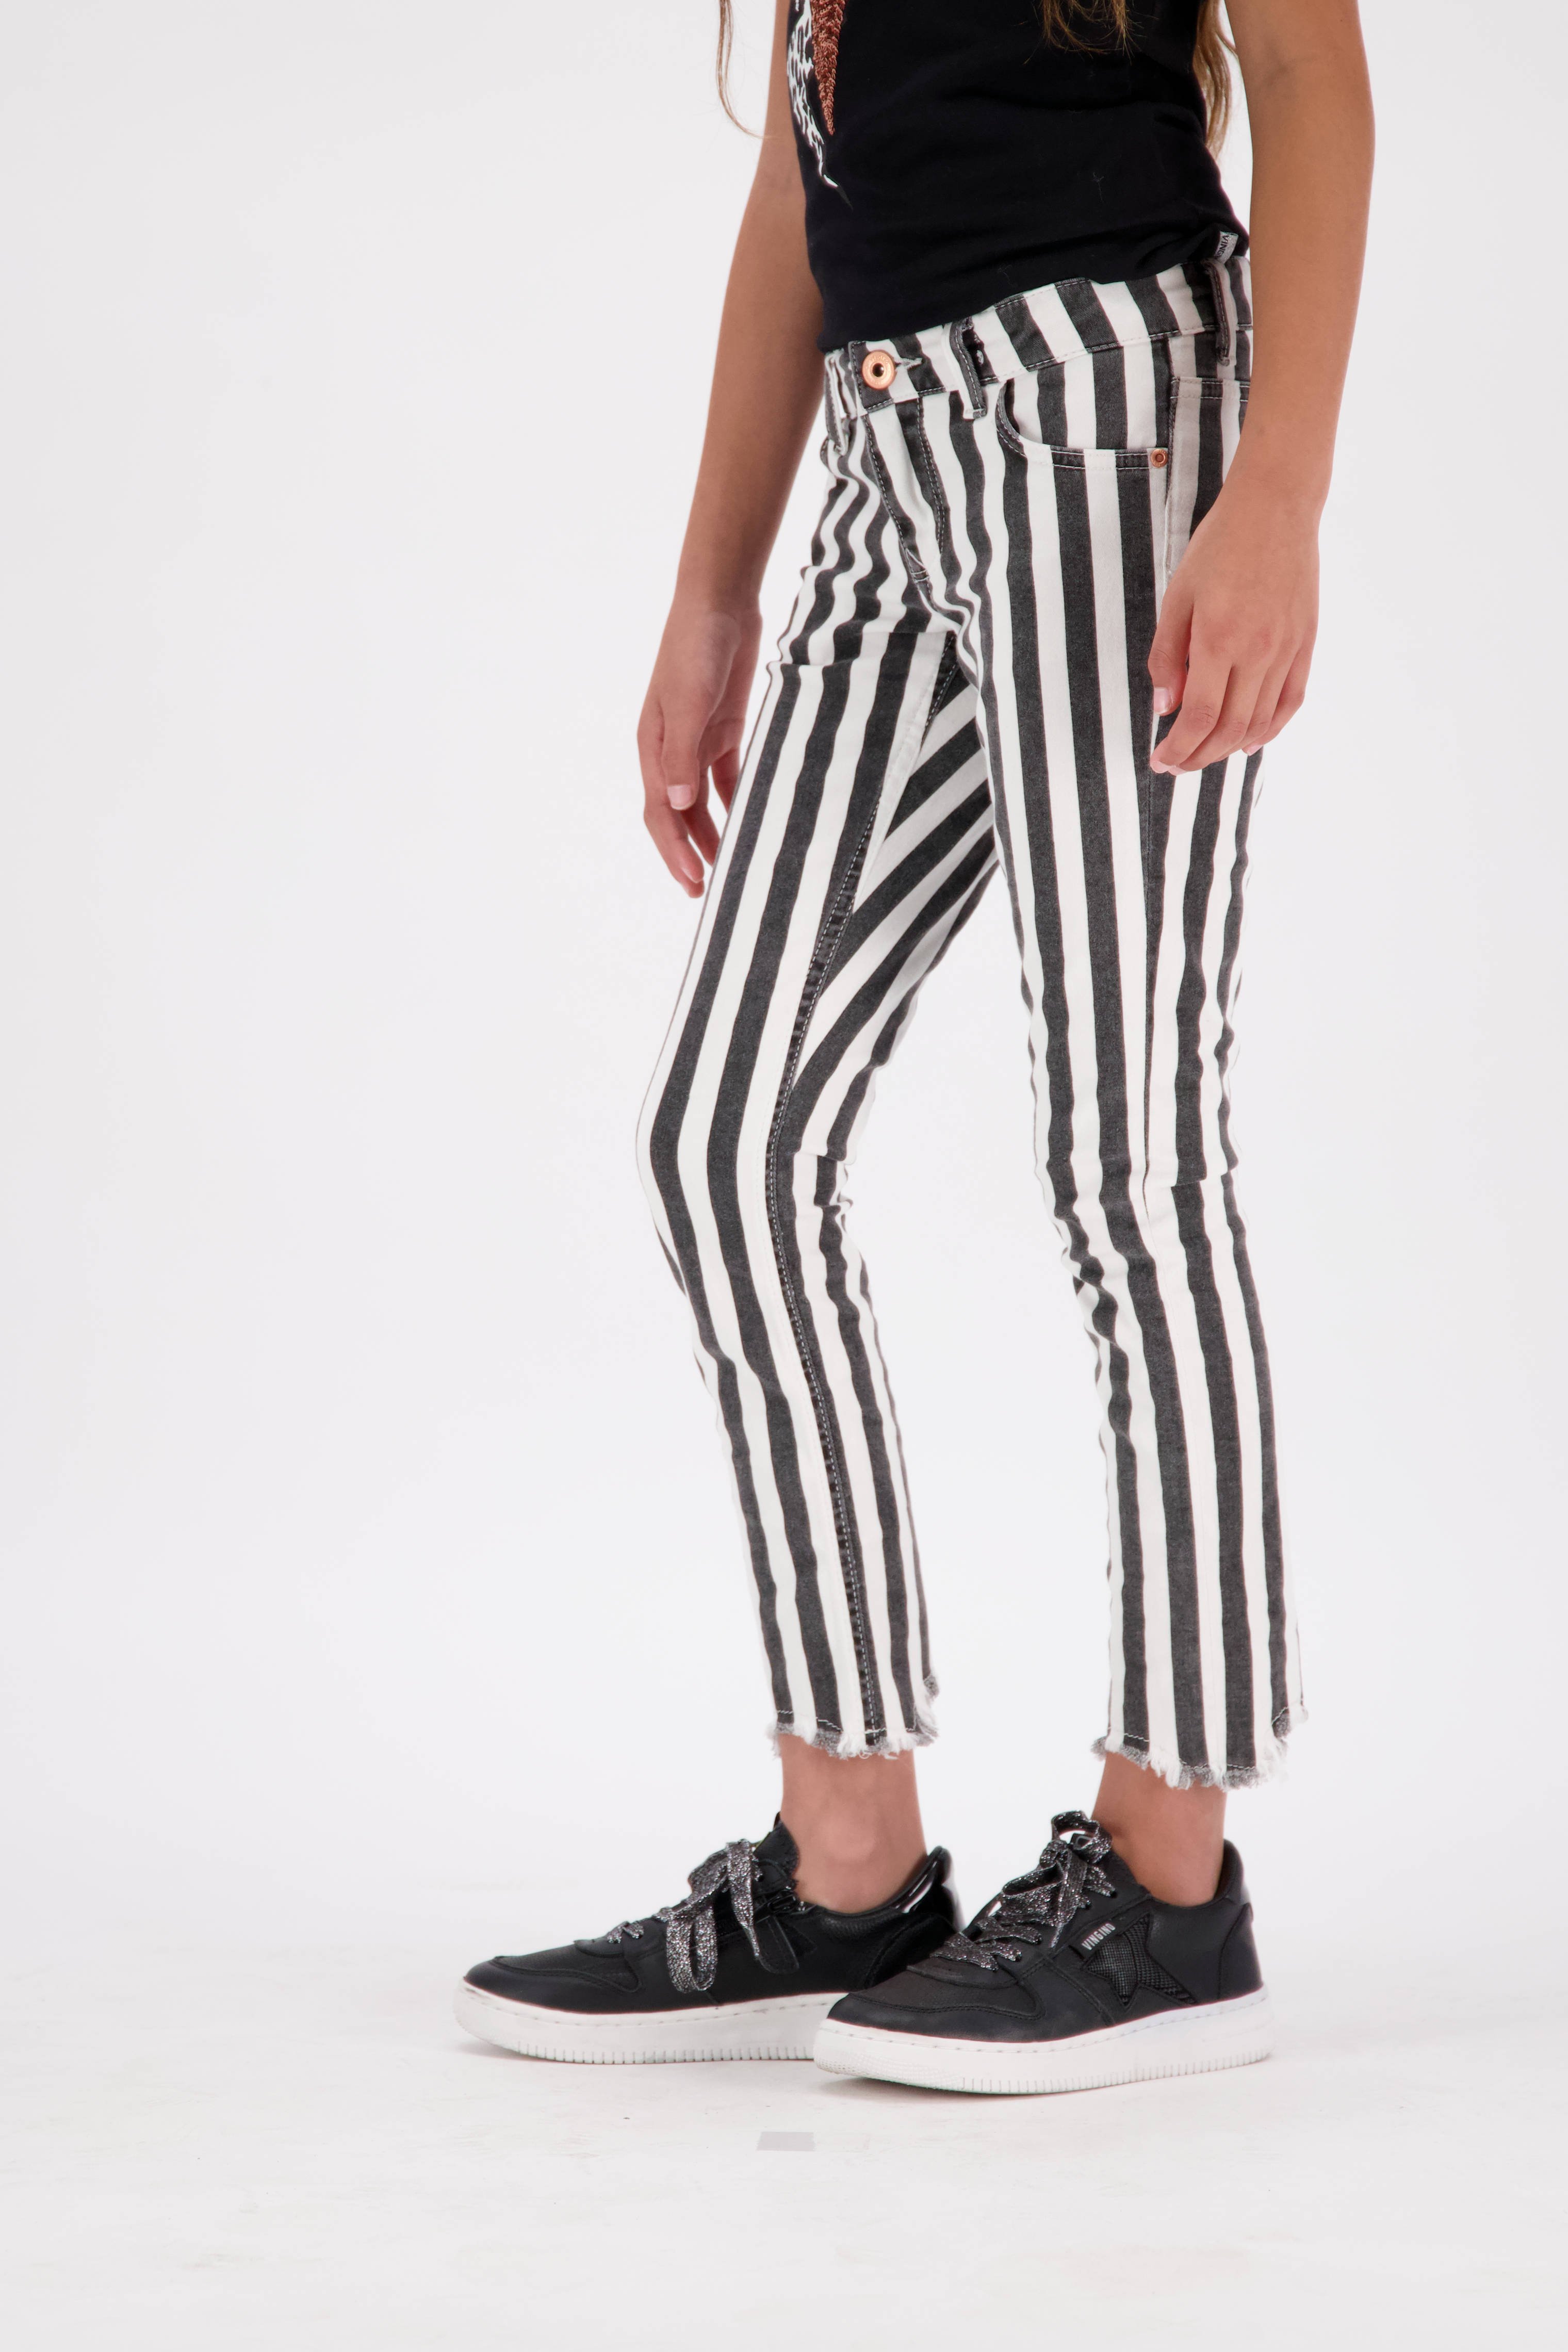 Mode Broeken Bandplooibroeken Bandplooibroek zwart-wit gestreept patroon zakelijke stijl 